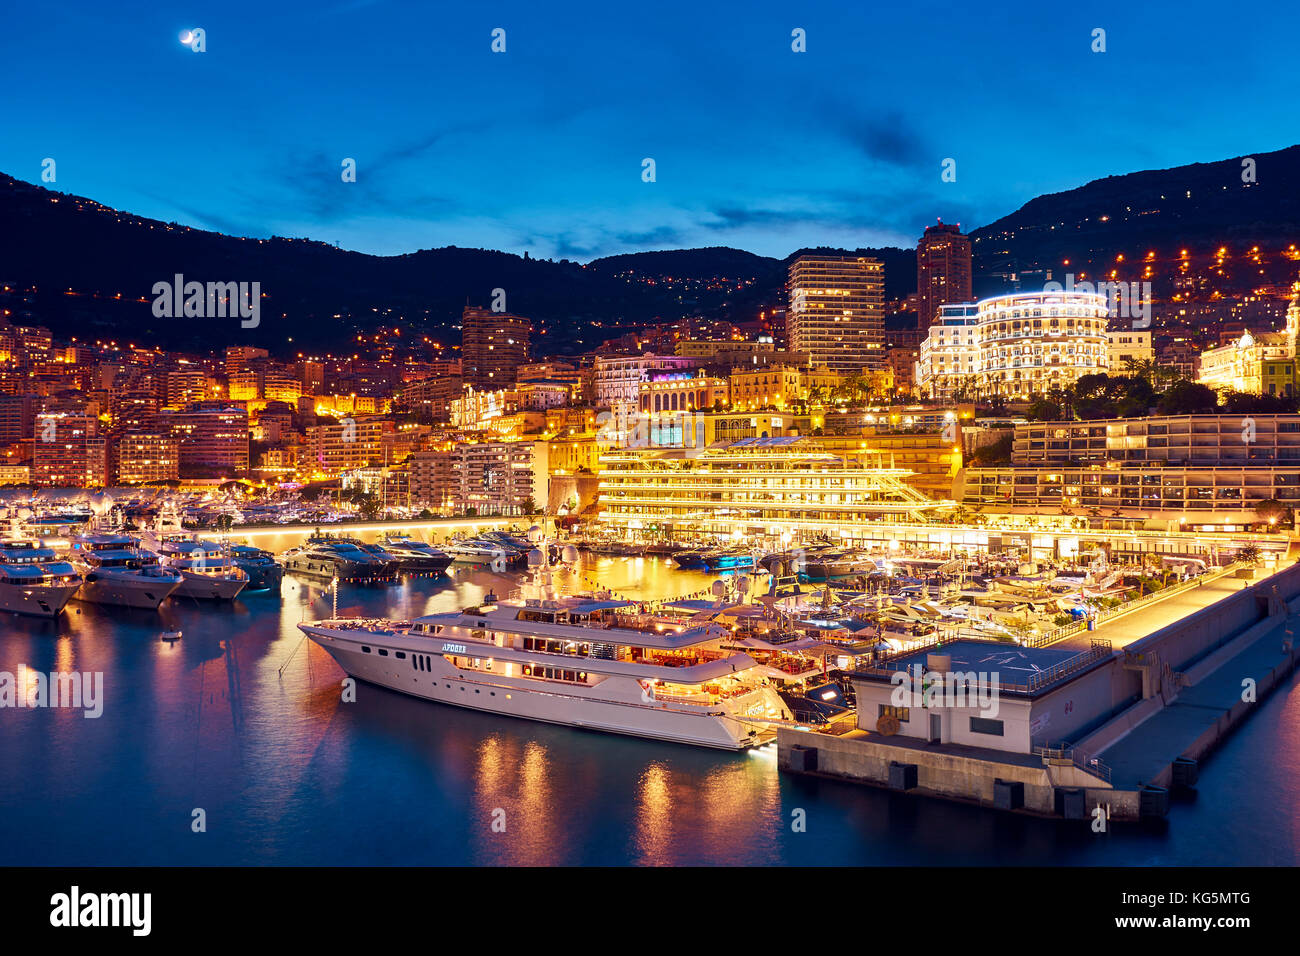 Montecarlo di notte, il principato di Monaco principato di Monaco, cote d'azur, sud della Francia, Europa occidentale, Europa Foto Stock